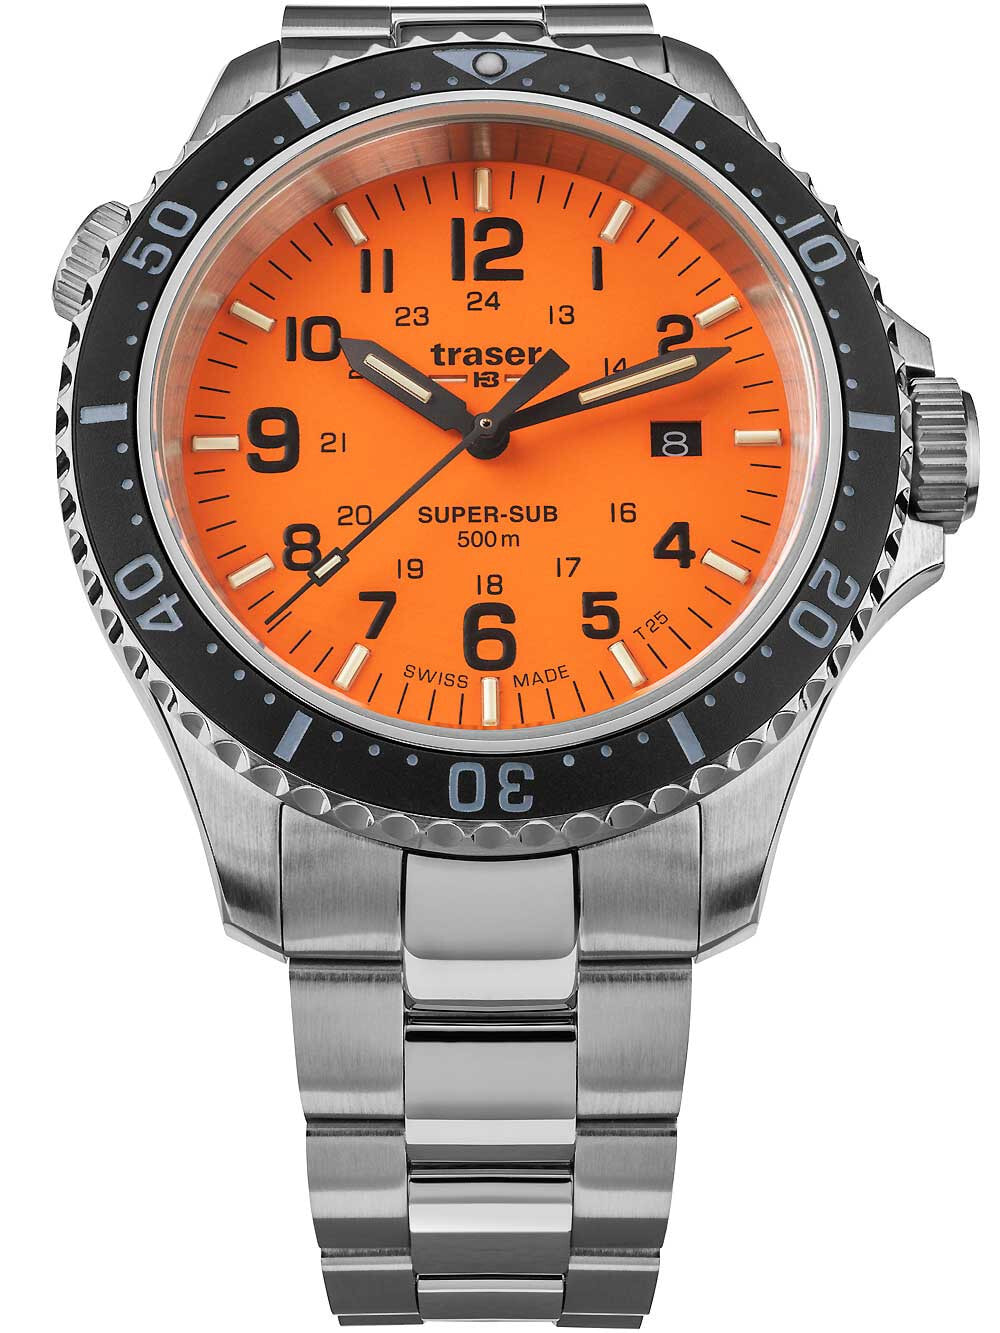 Мужские наручные часы с серебряным браслетом Traser H3 109381 P67 T25 SuperSub orange 46 mm diver 50ATM